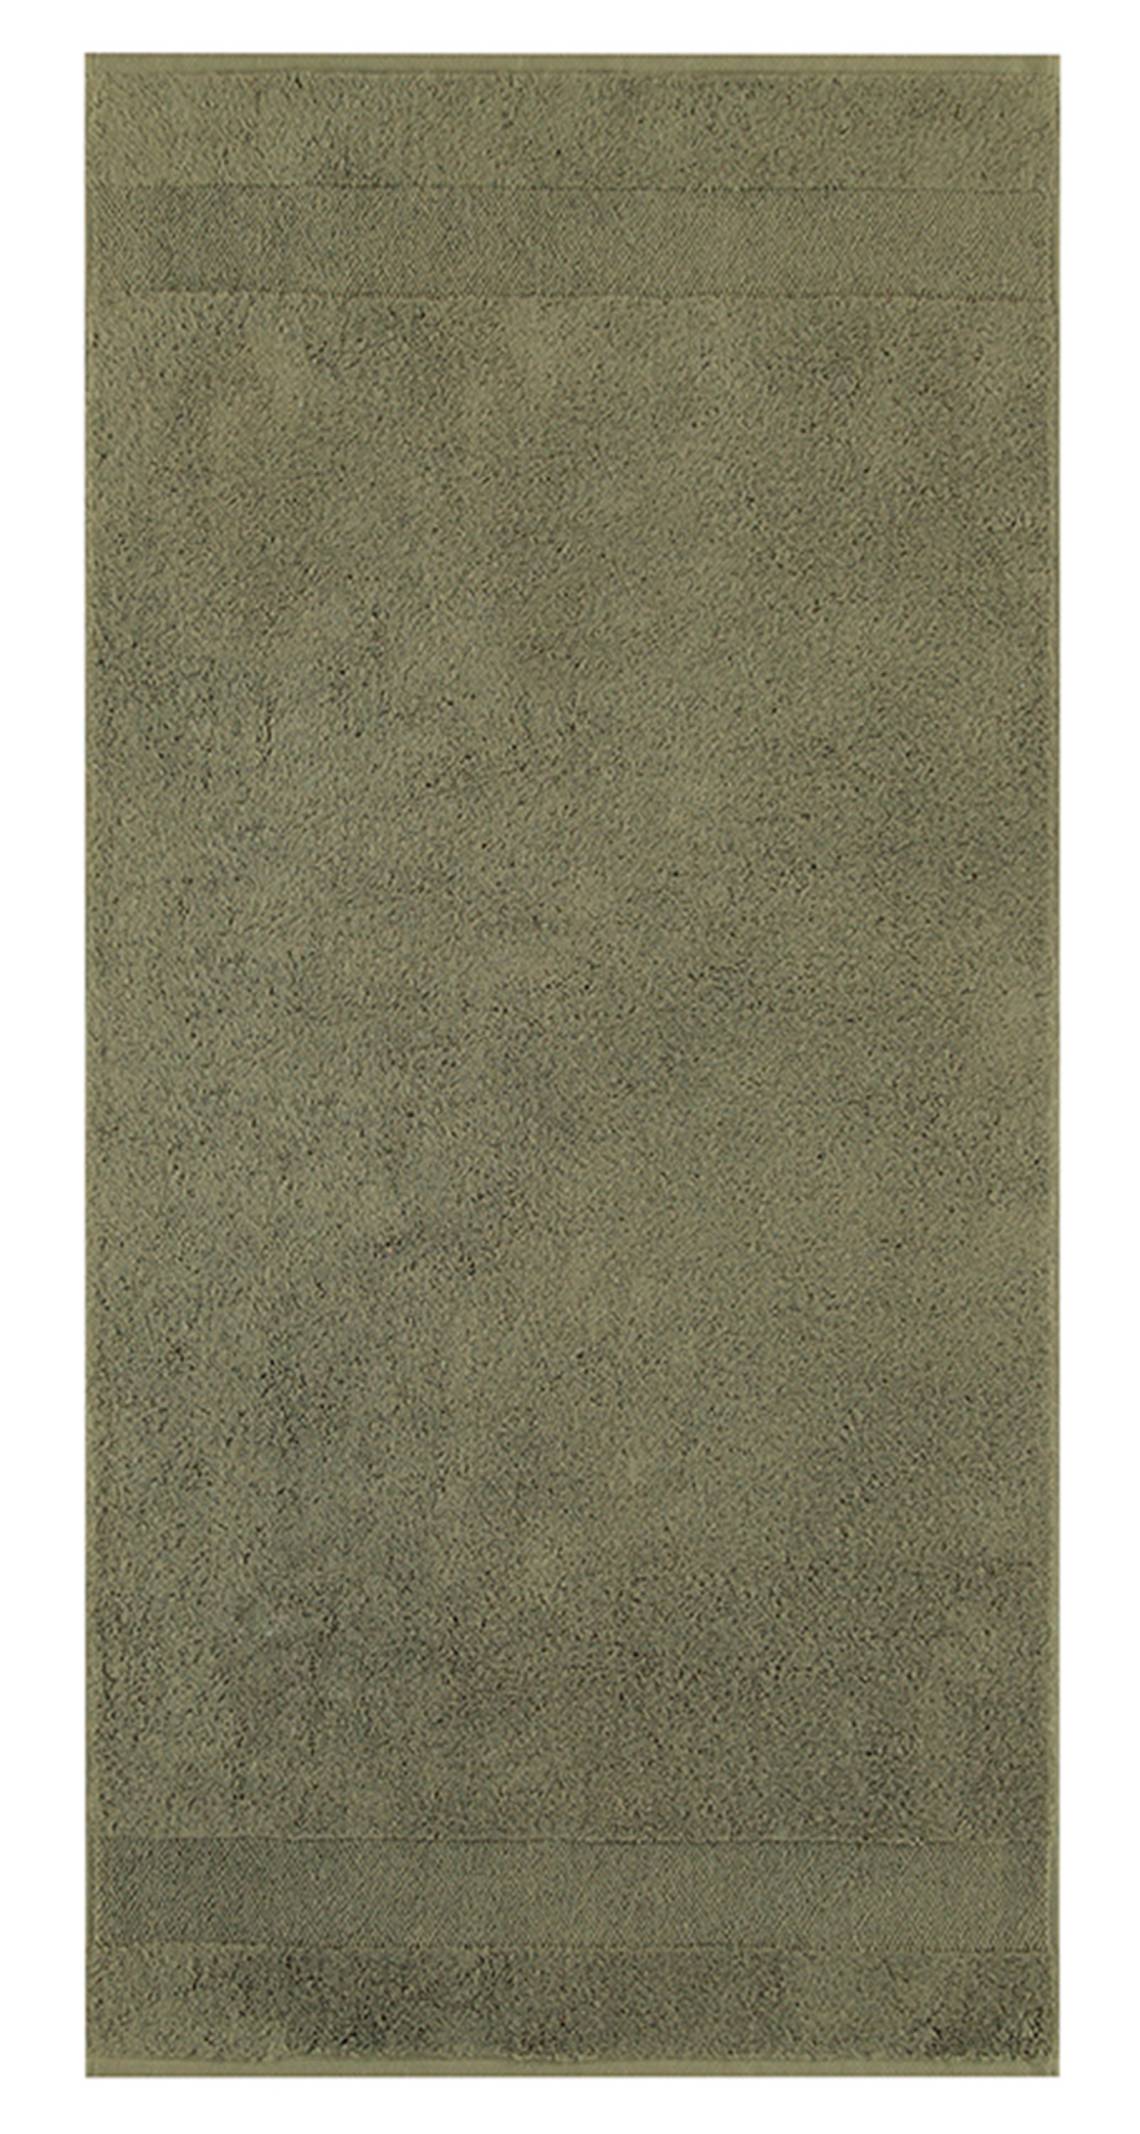 Villeroy & Boch - One Collection Handtuch grün